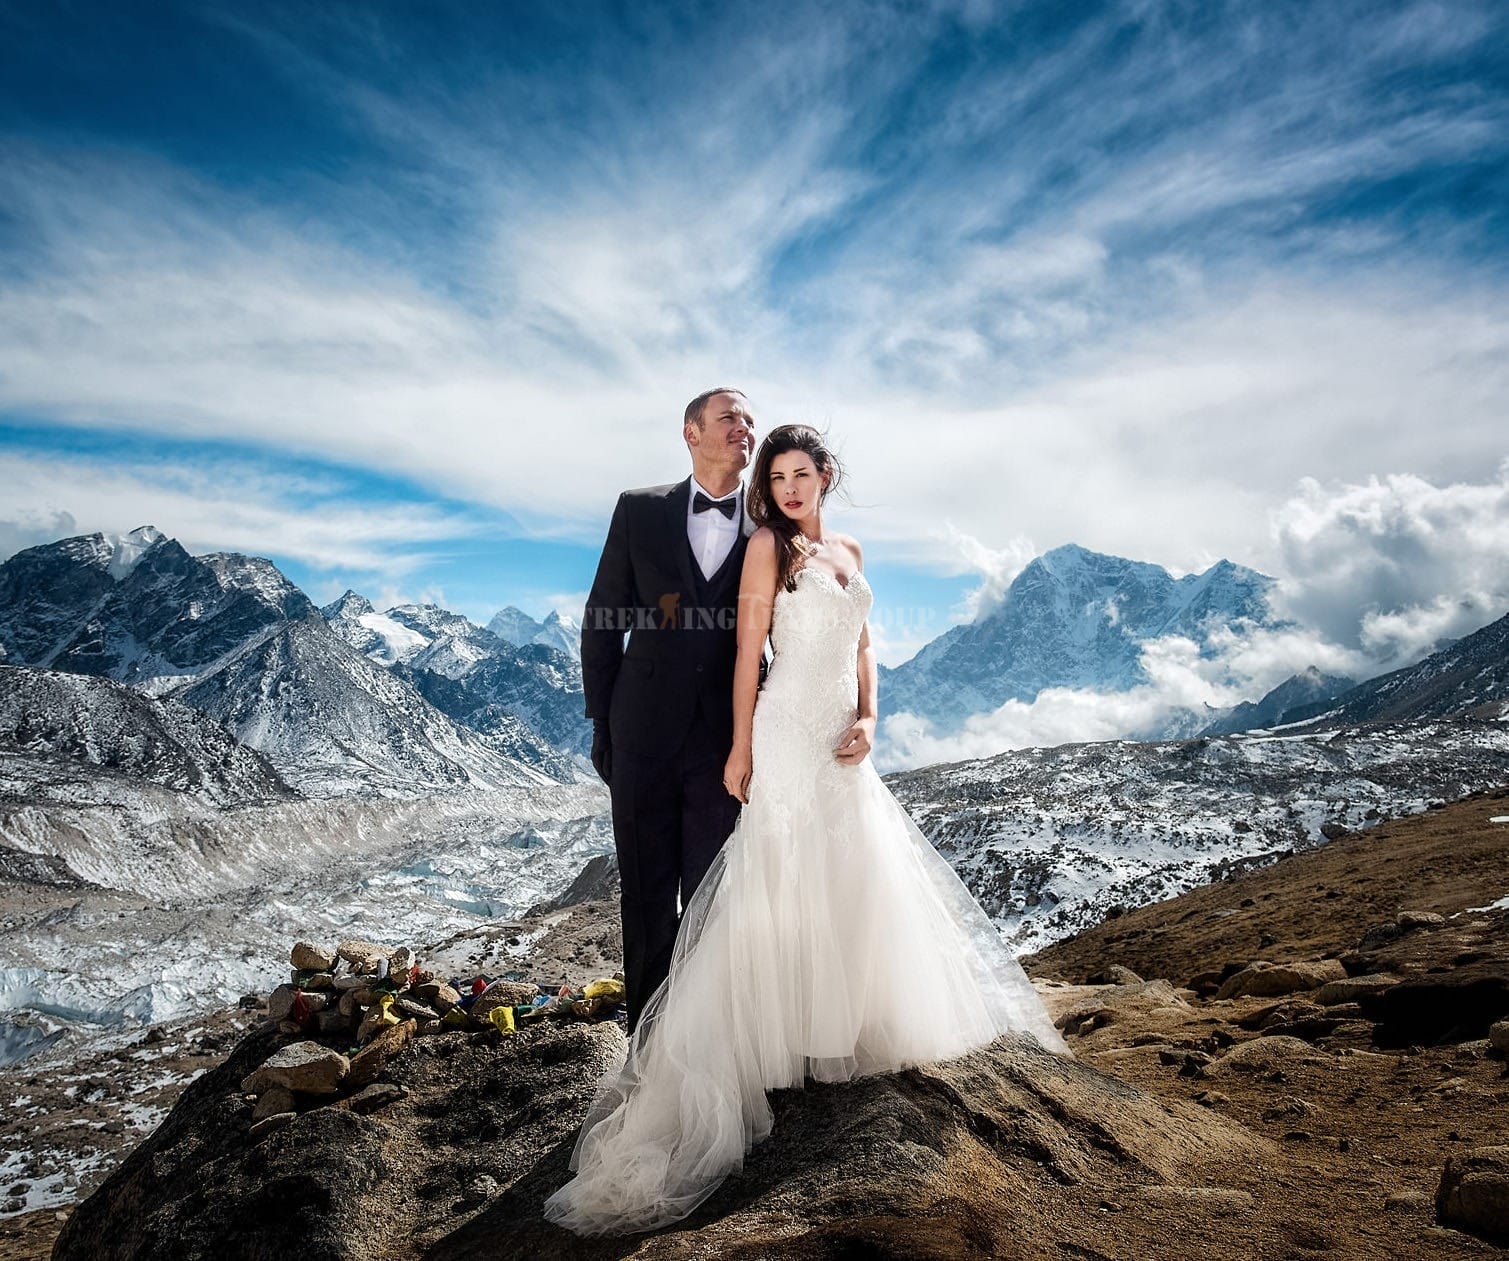 Destination wedding at Everest Base Camp